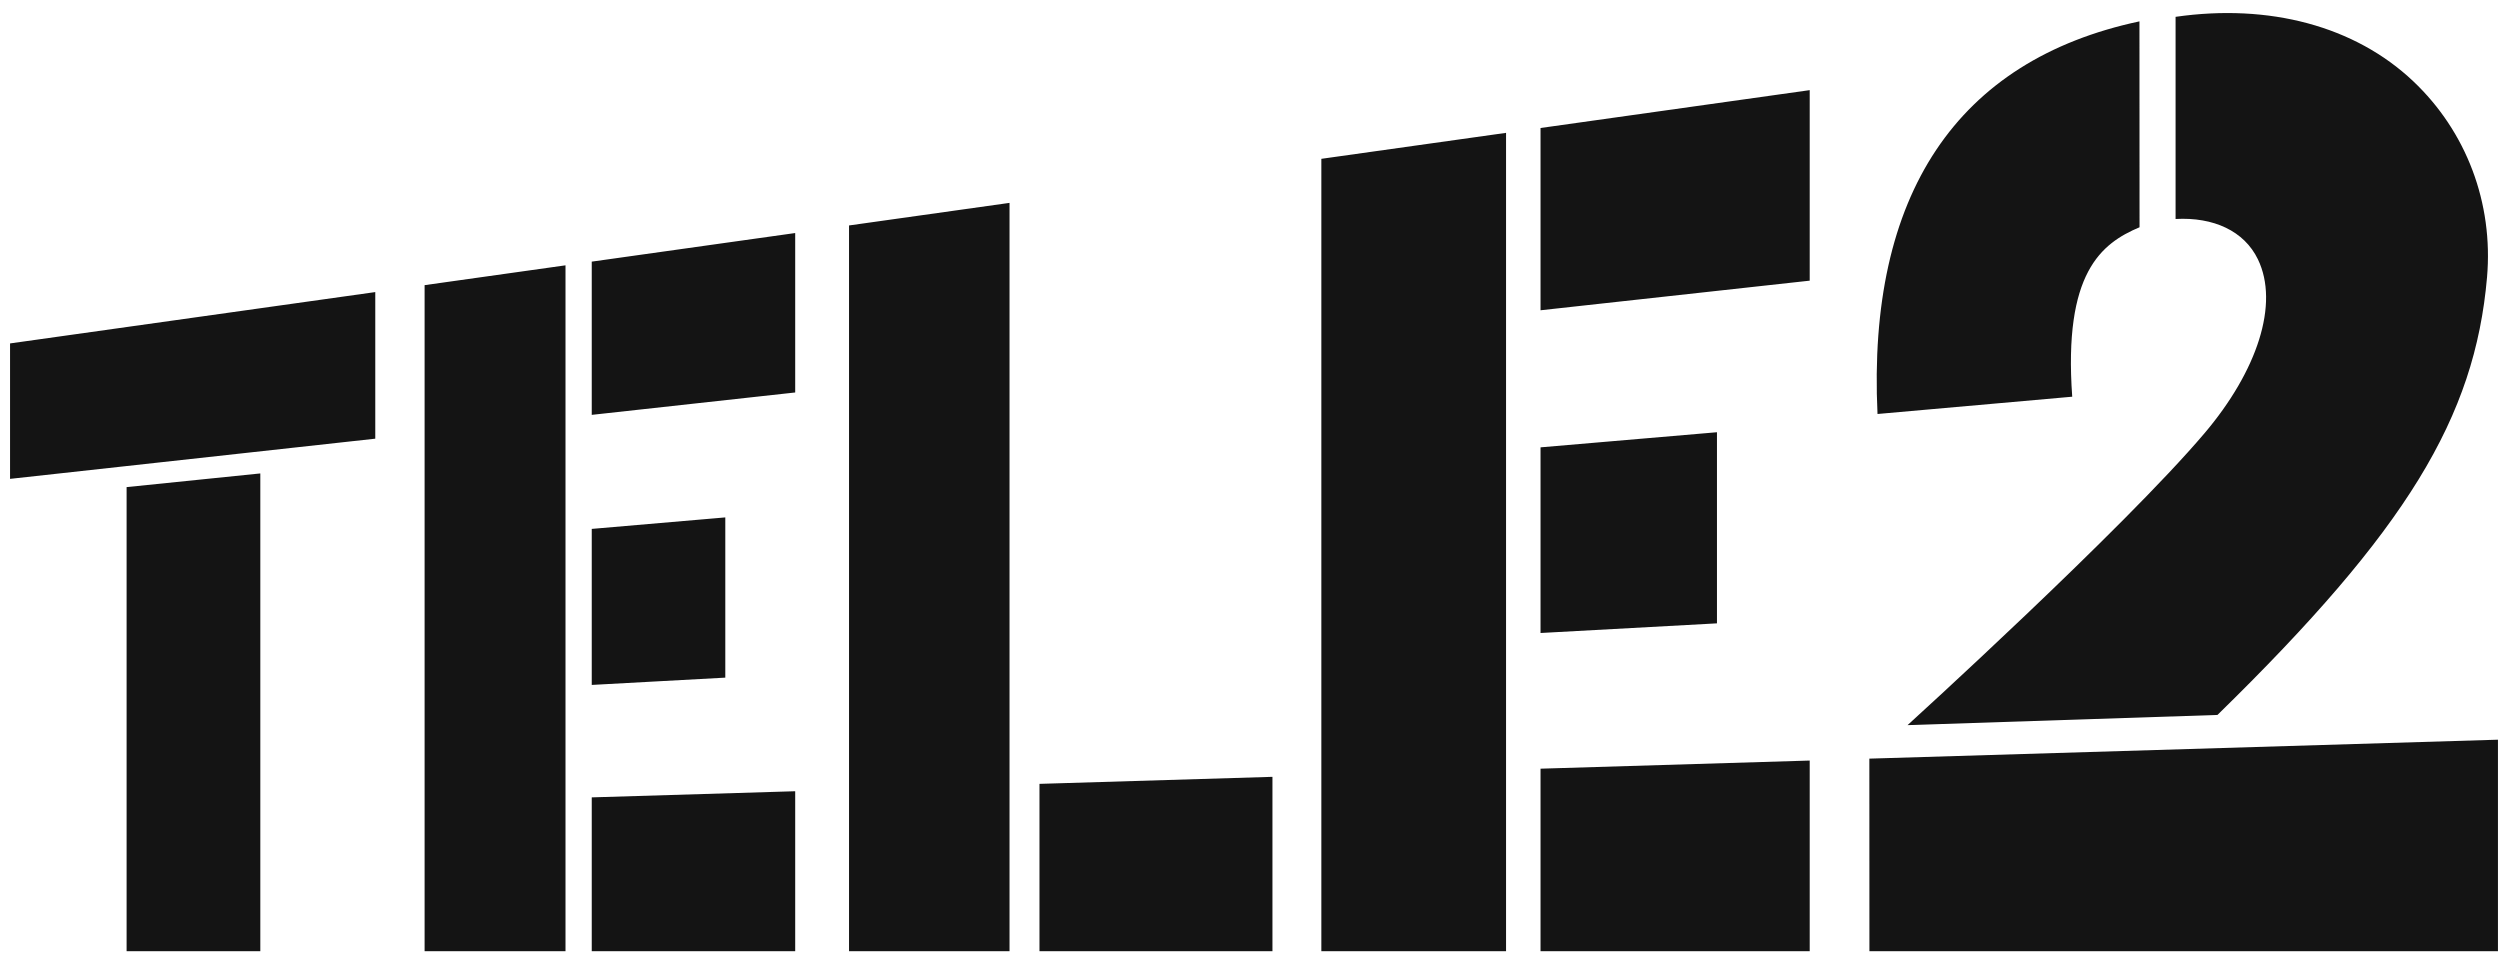 logo-tele2.png